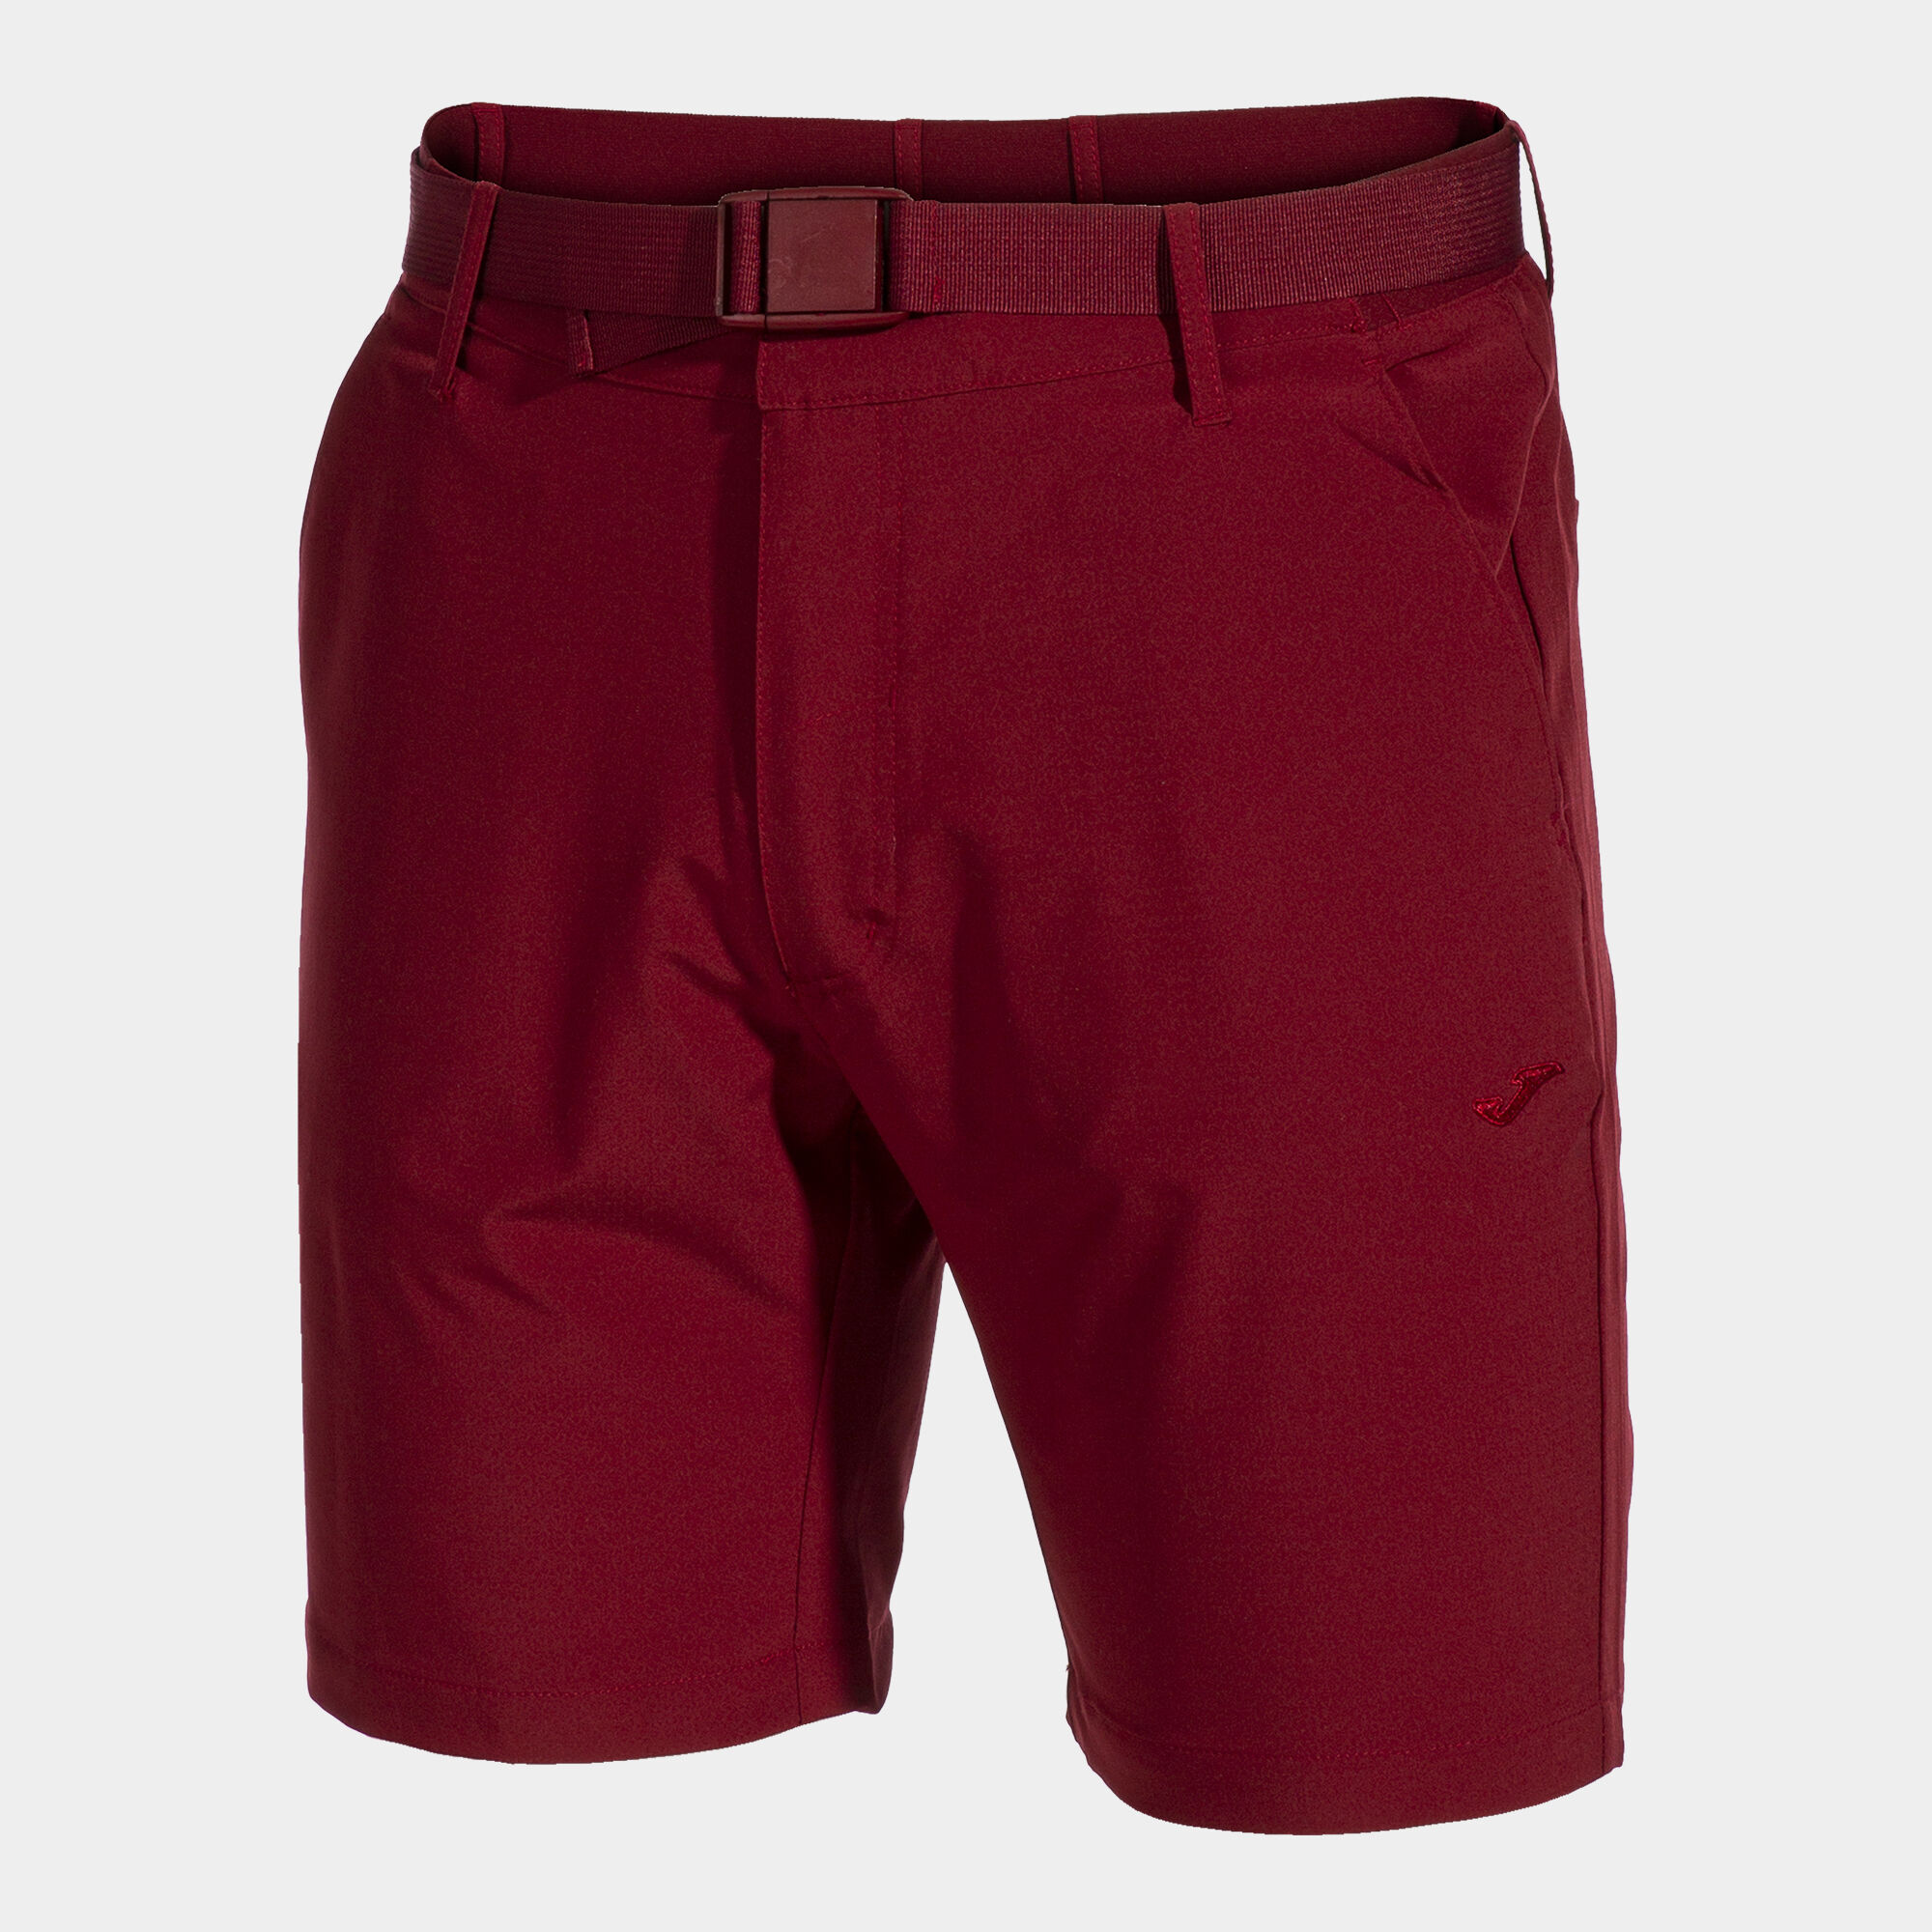 Bermuda shorts man Pasarela III burgundy